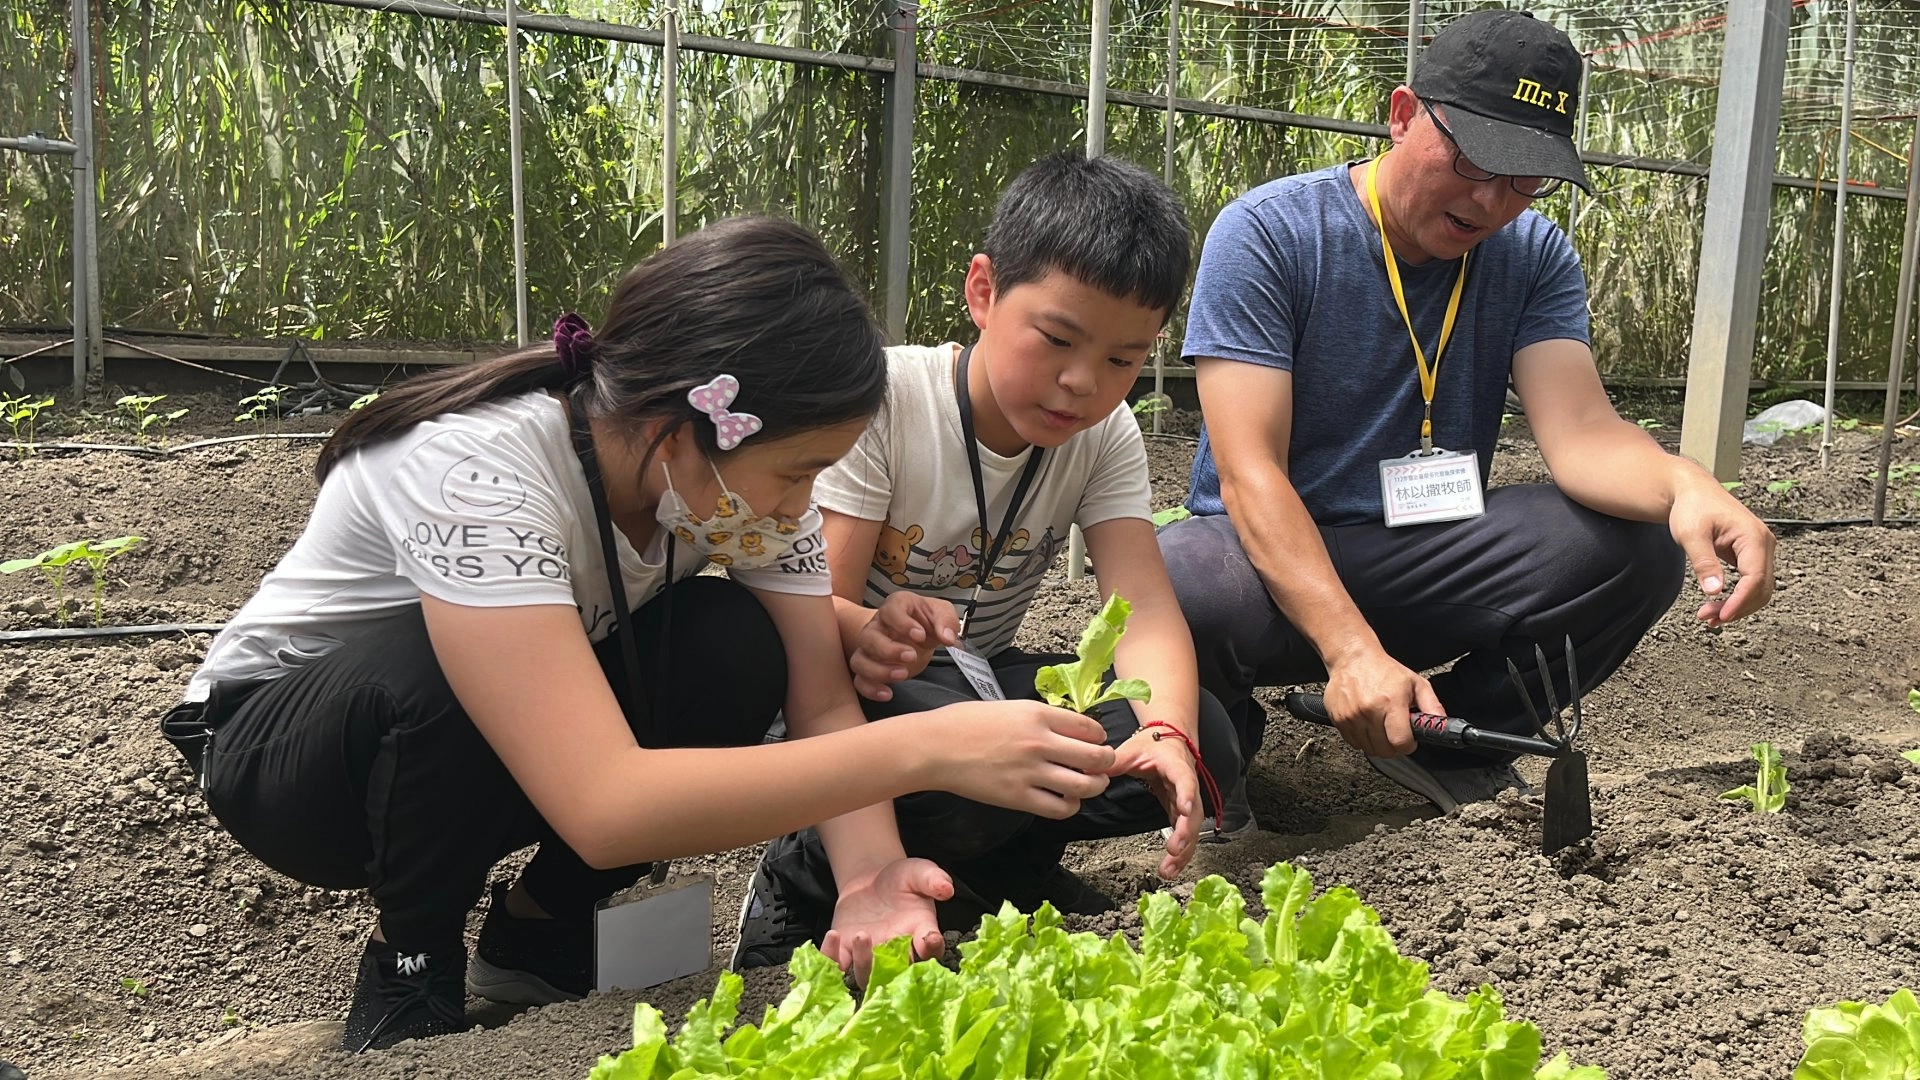 第一天的「小小農夫/食農教育活動」，多元智能探索被歸類於一樓(結合肢體動覺與自然博物)。該課程設計讓孩子下田種菜，學習蔬菜的育苗及定植。